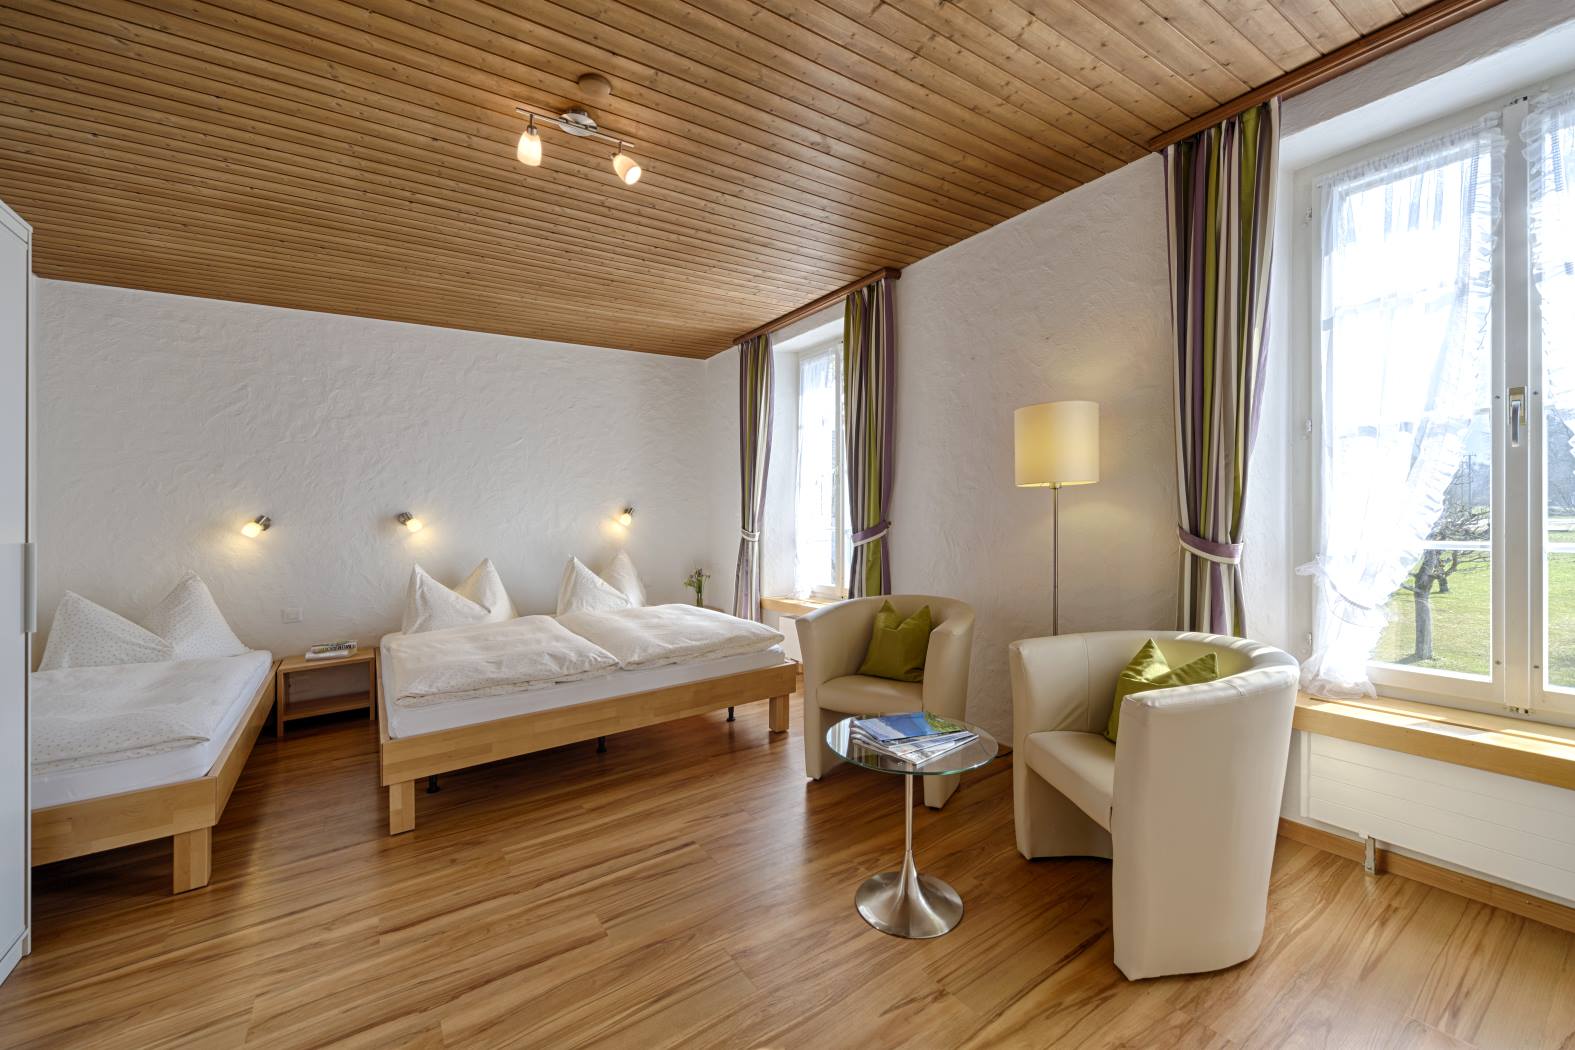 Komfortable Nichtraucherzimmer für 3 Personen buchen im Hotel neuhaus zum see, direkt am Thunersee, Interlaken